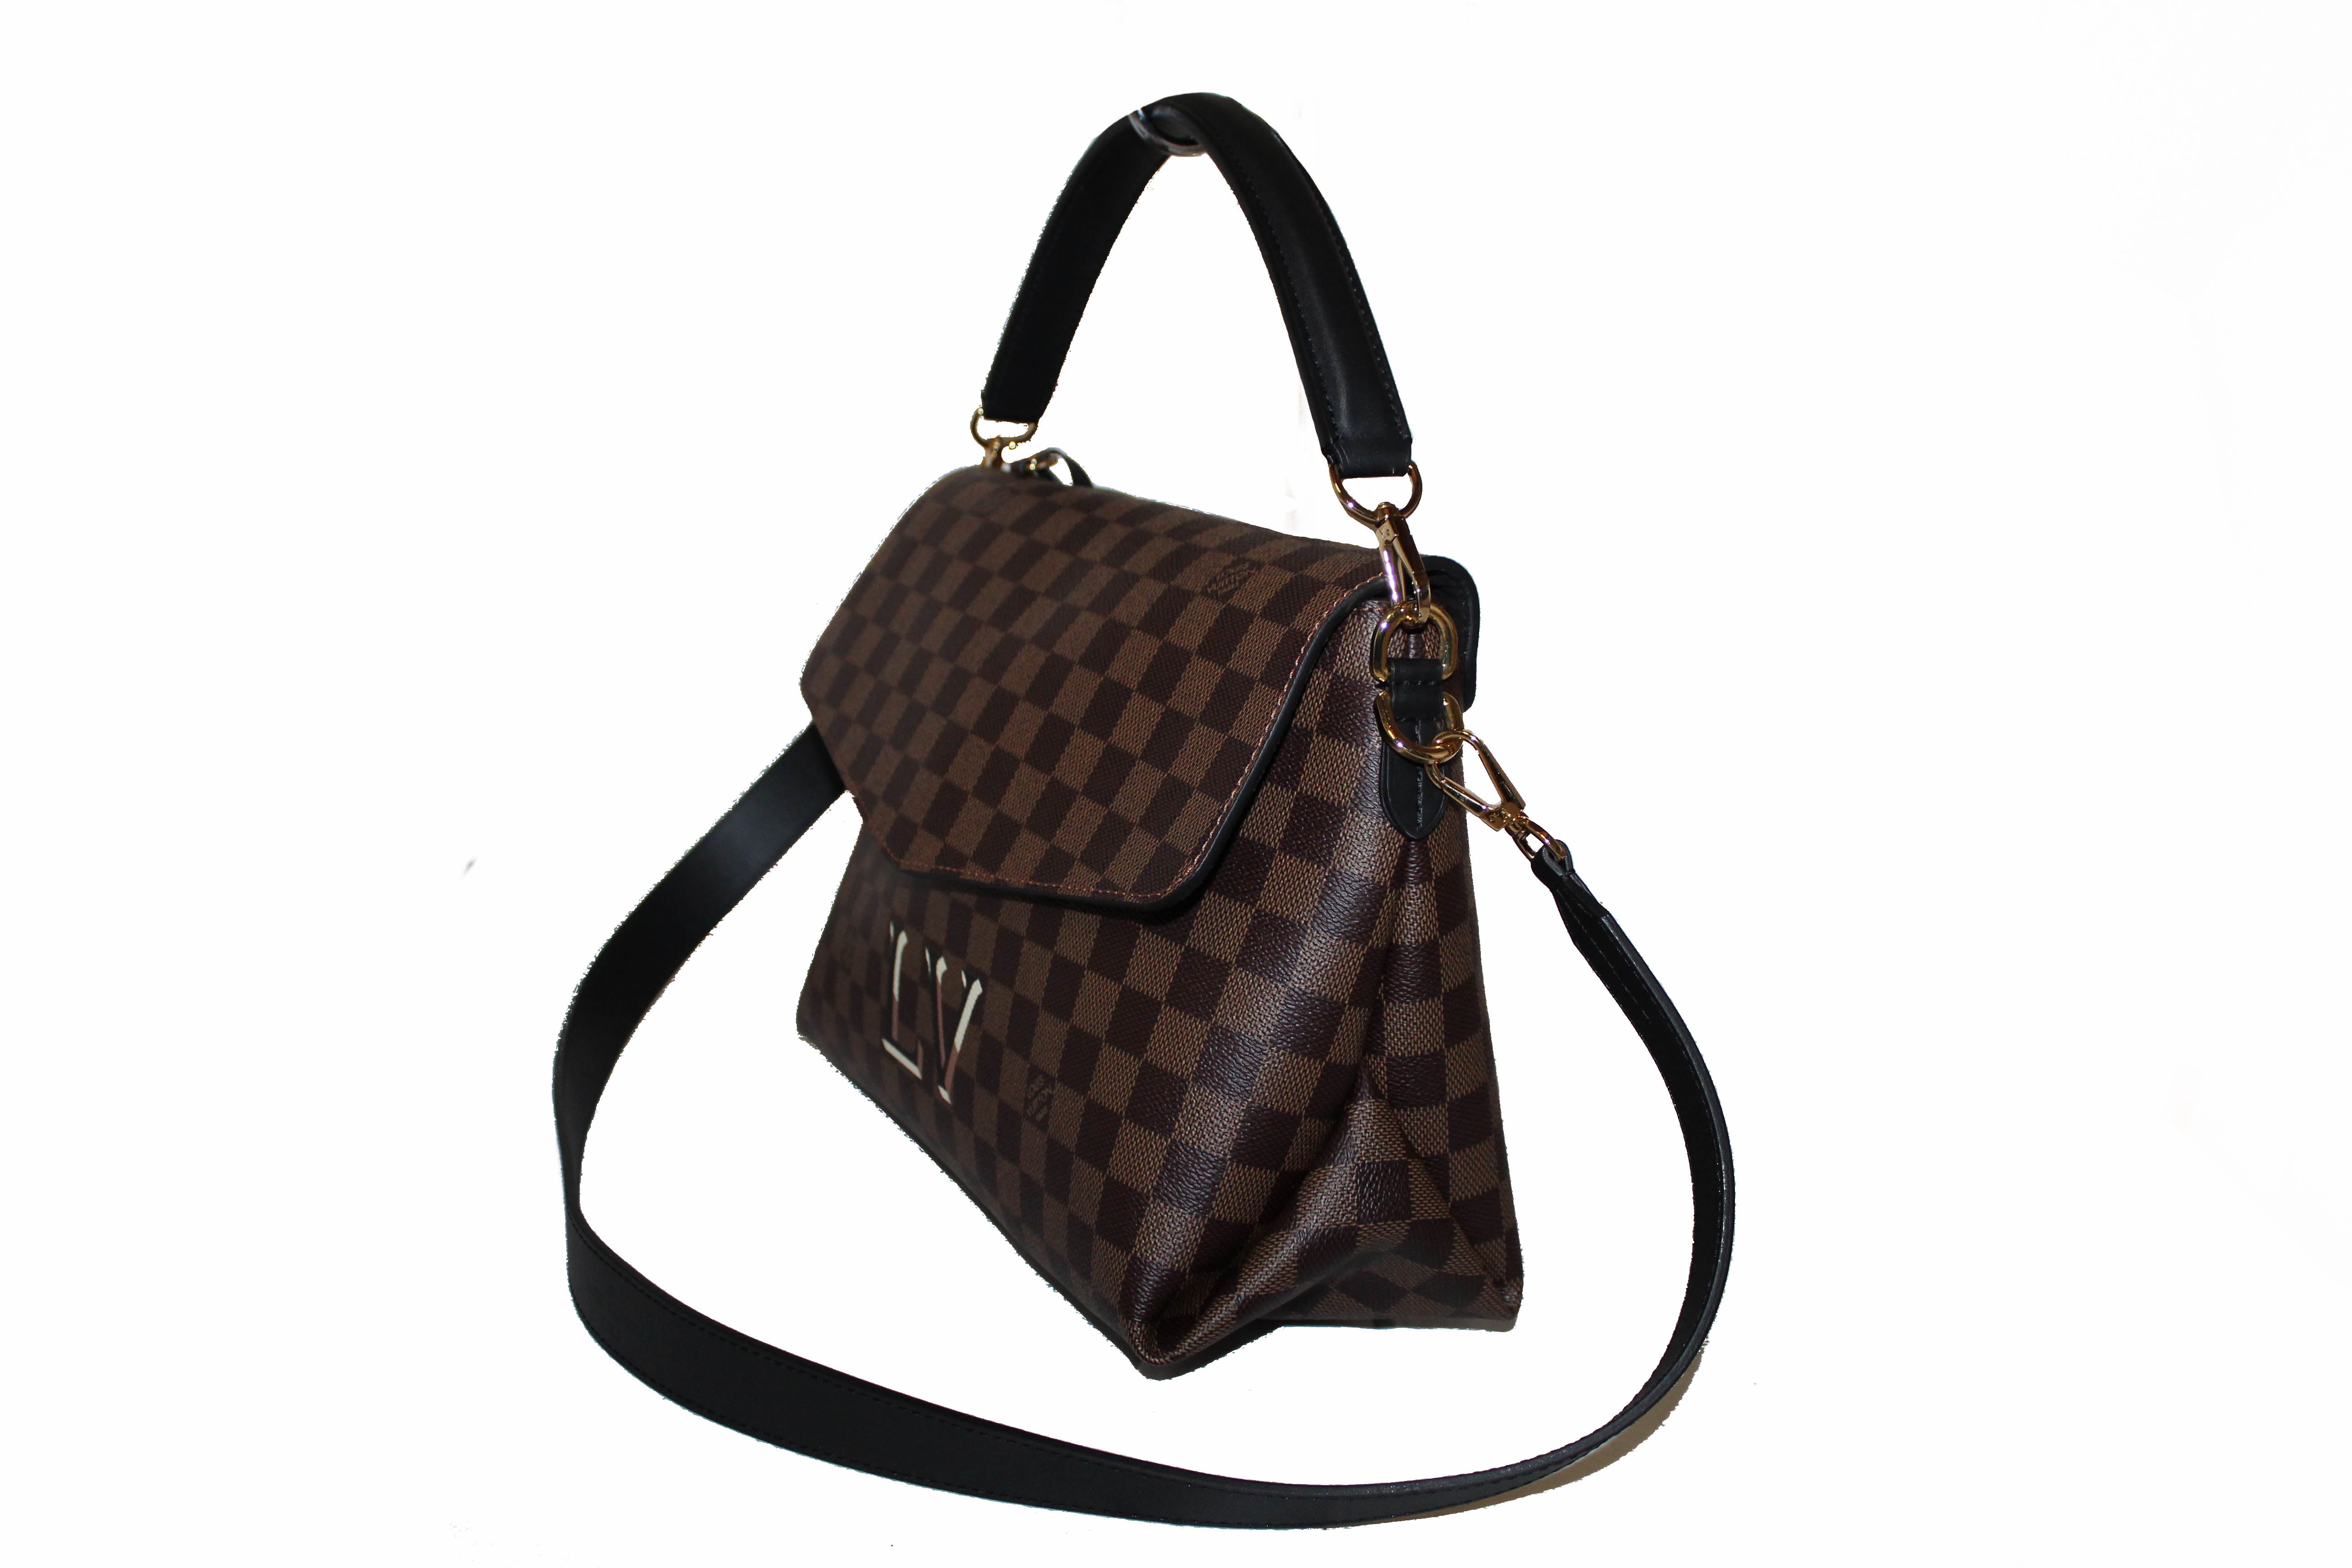 Authentic Louis Vuitton Damier Ebene Beaubourg MM Handbag/Shoulder